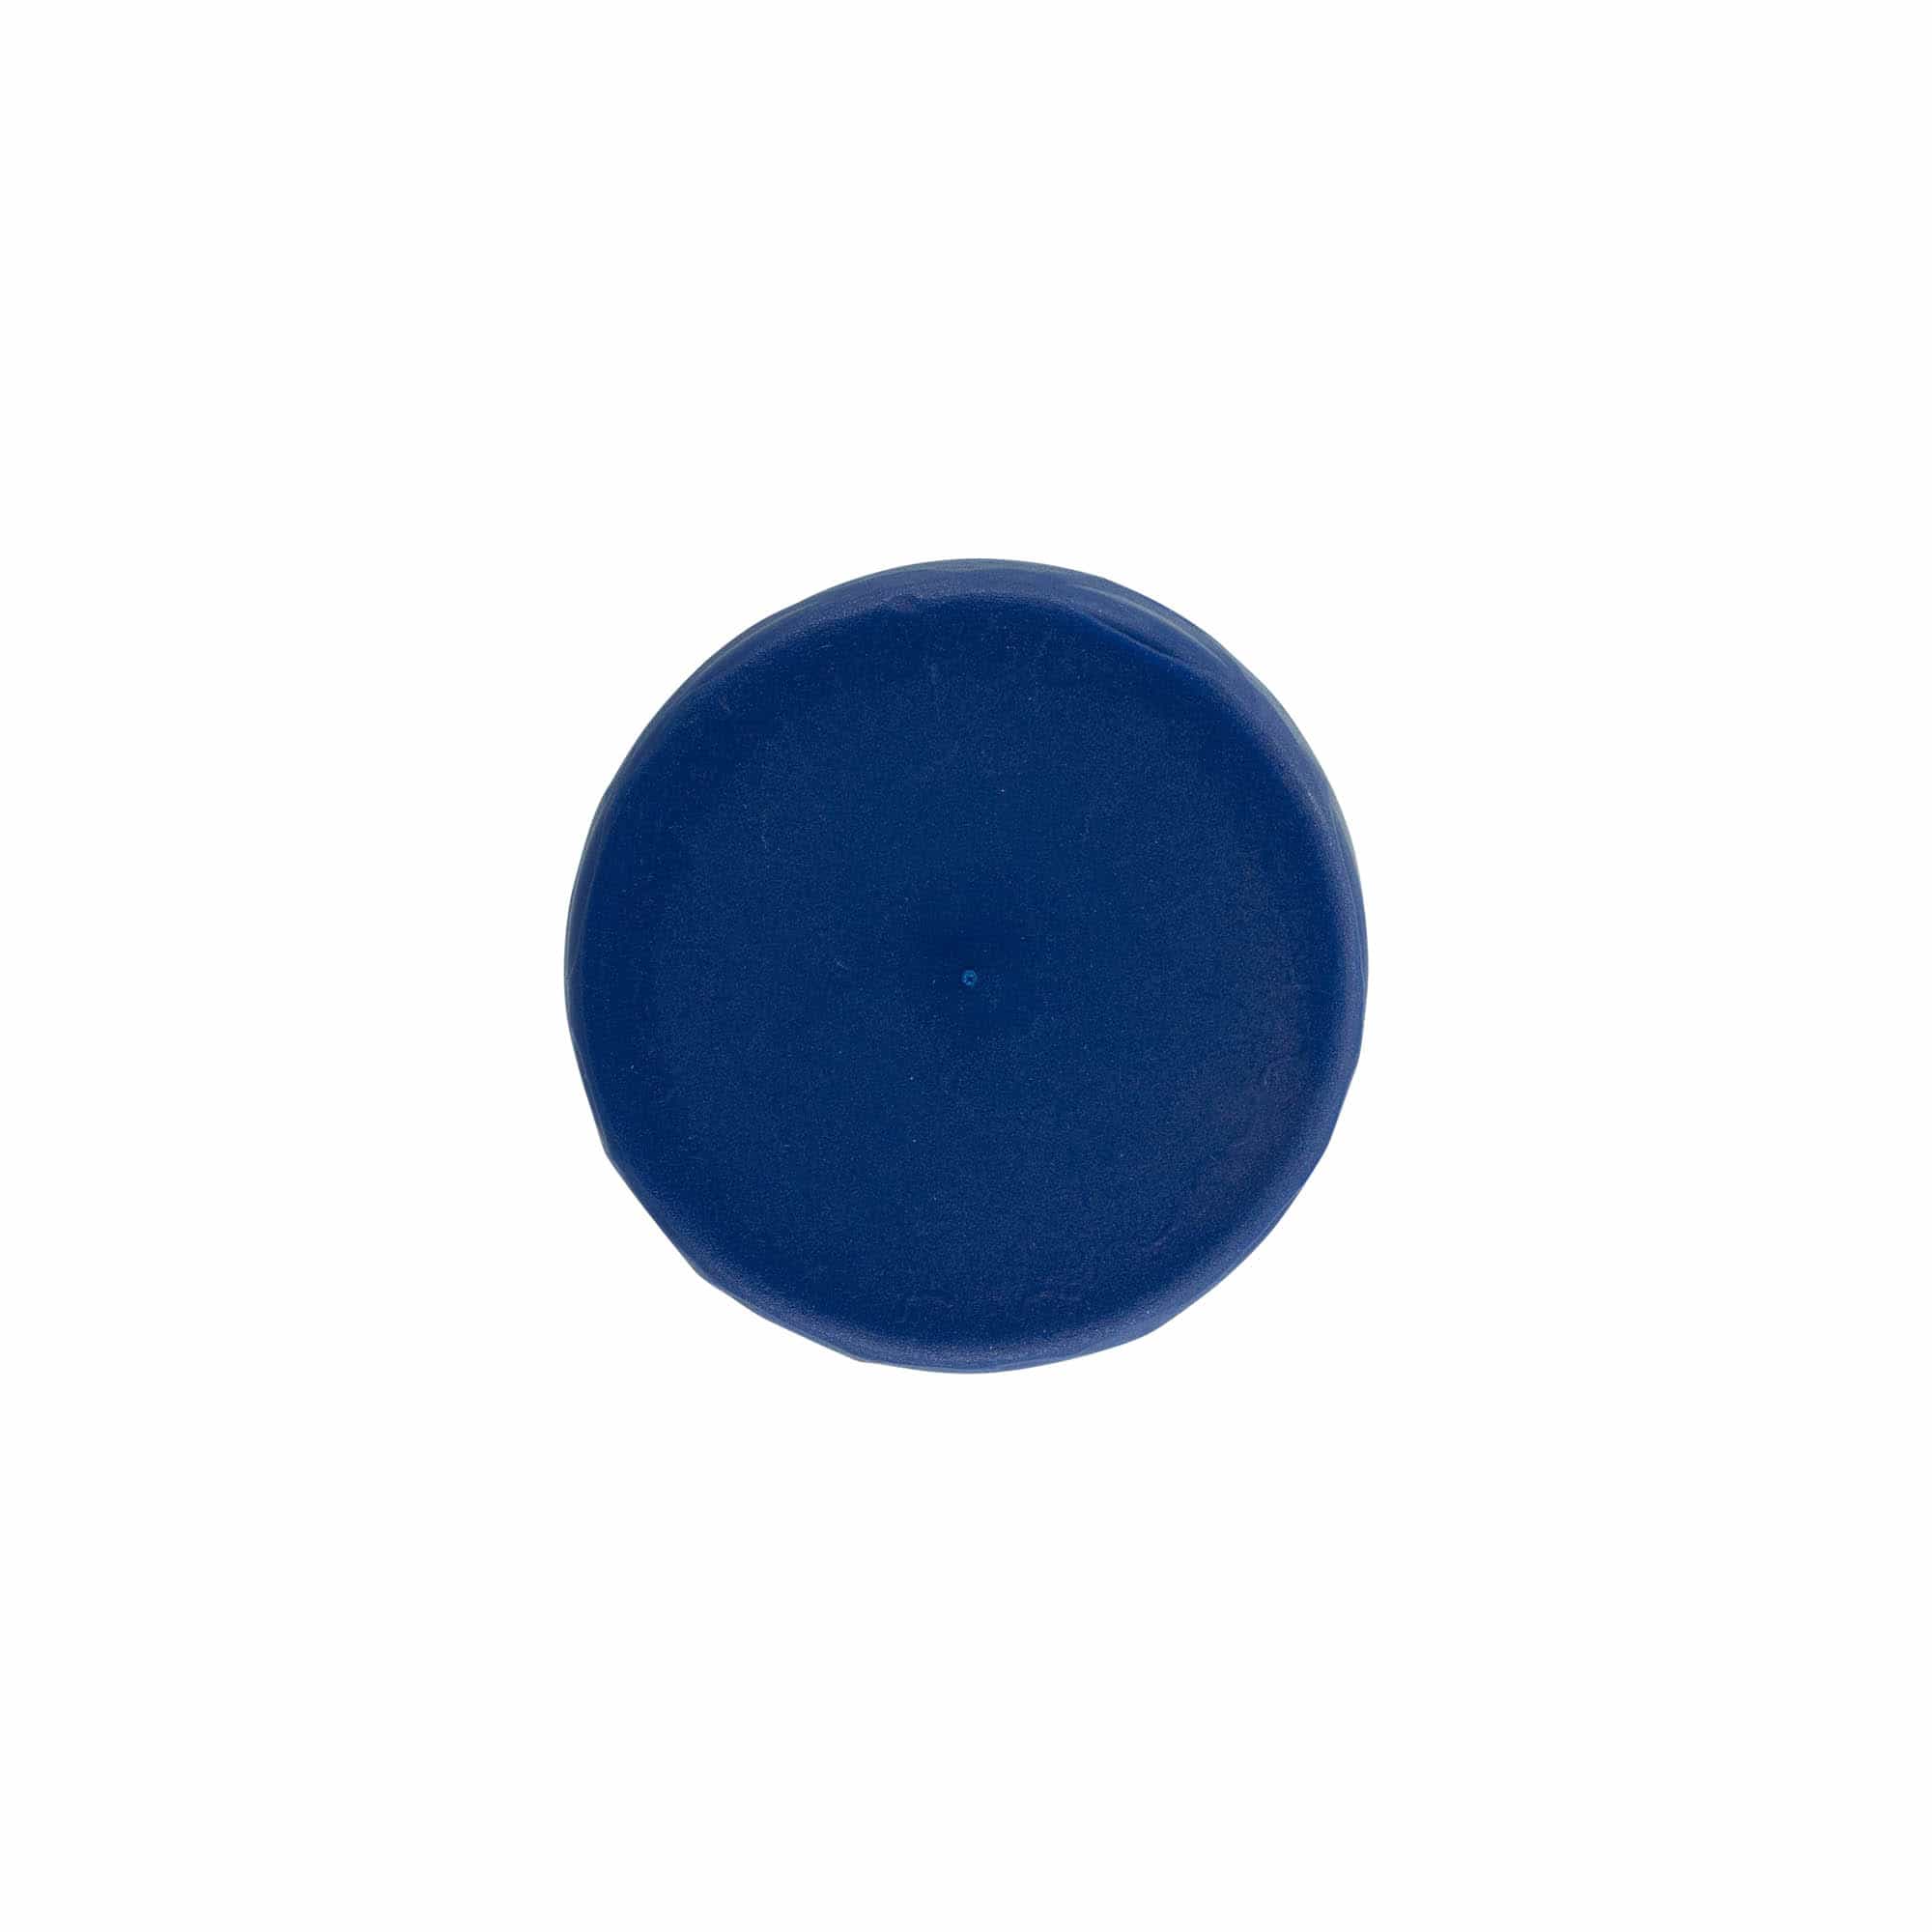 Hætte til smalhalset keramikkrukke, HDPE-plast, blå